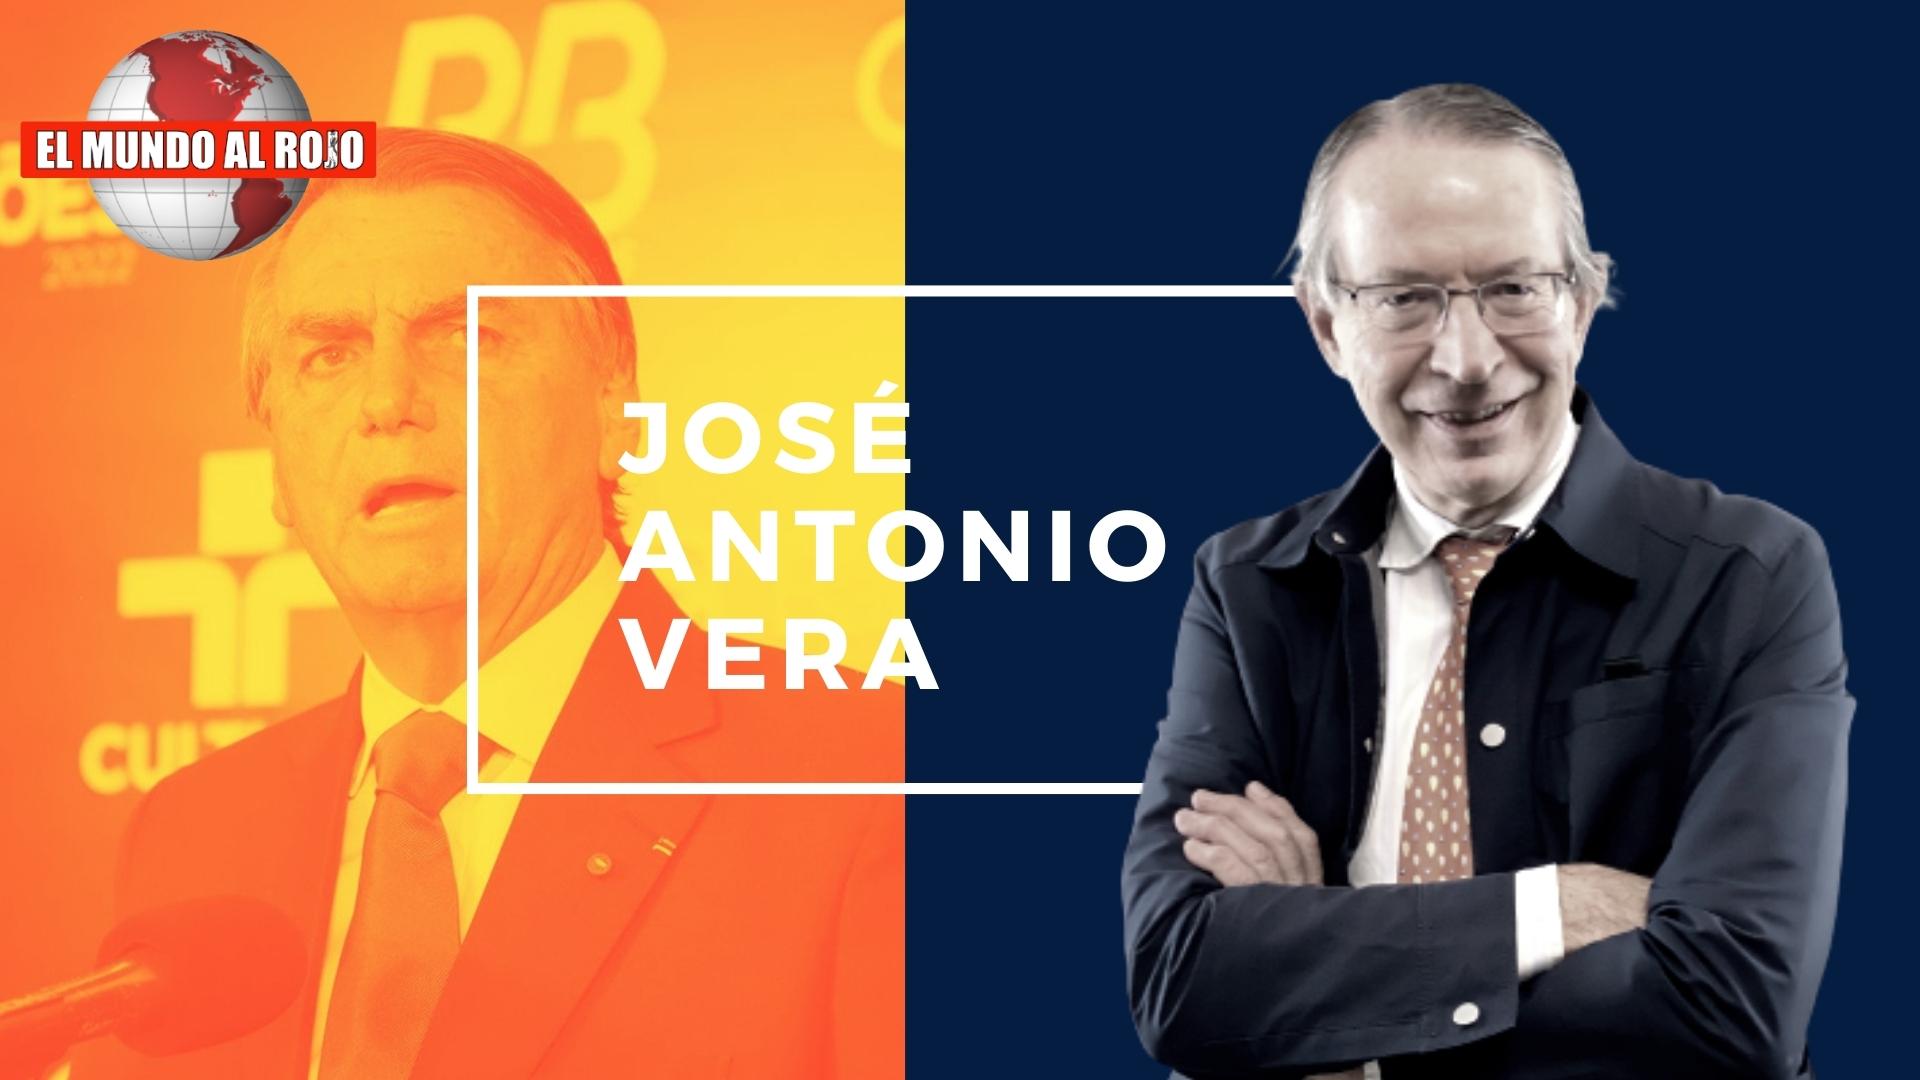 Jose Antonio Vera